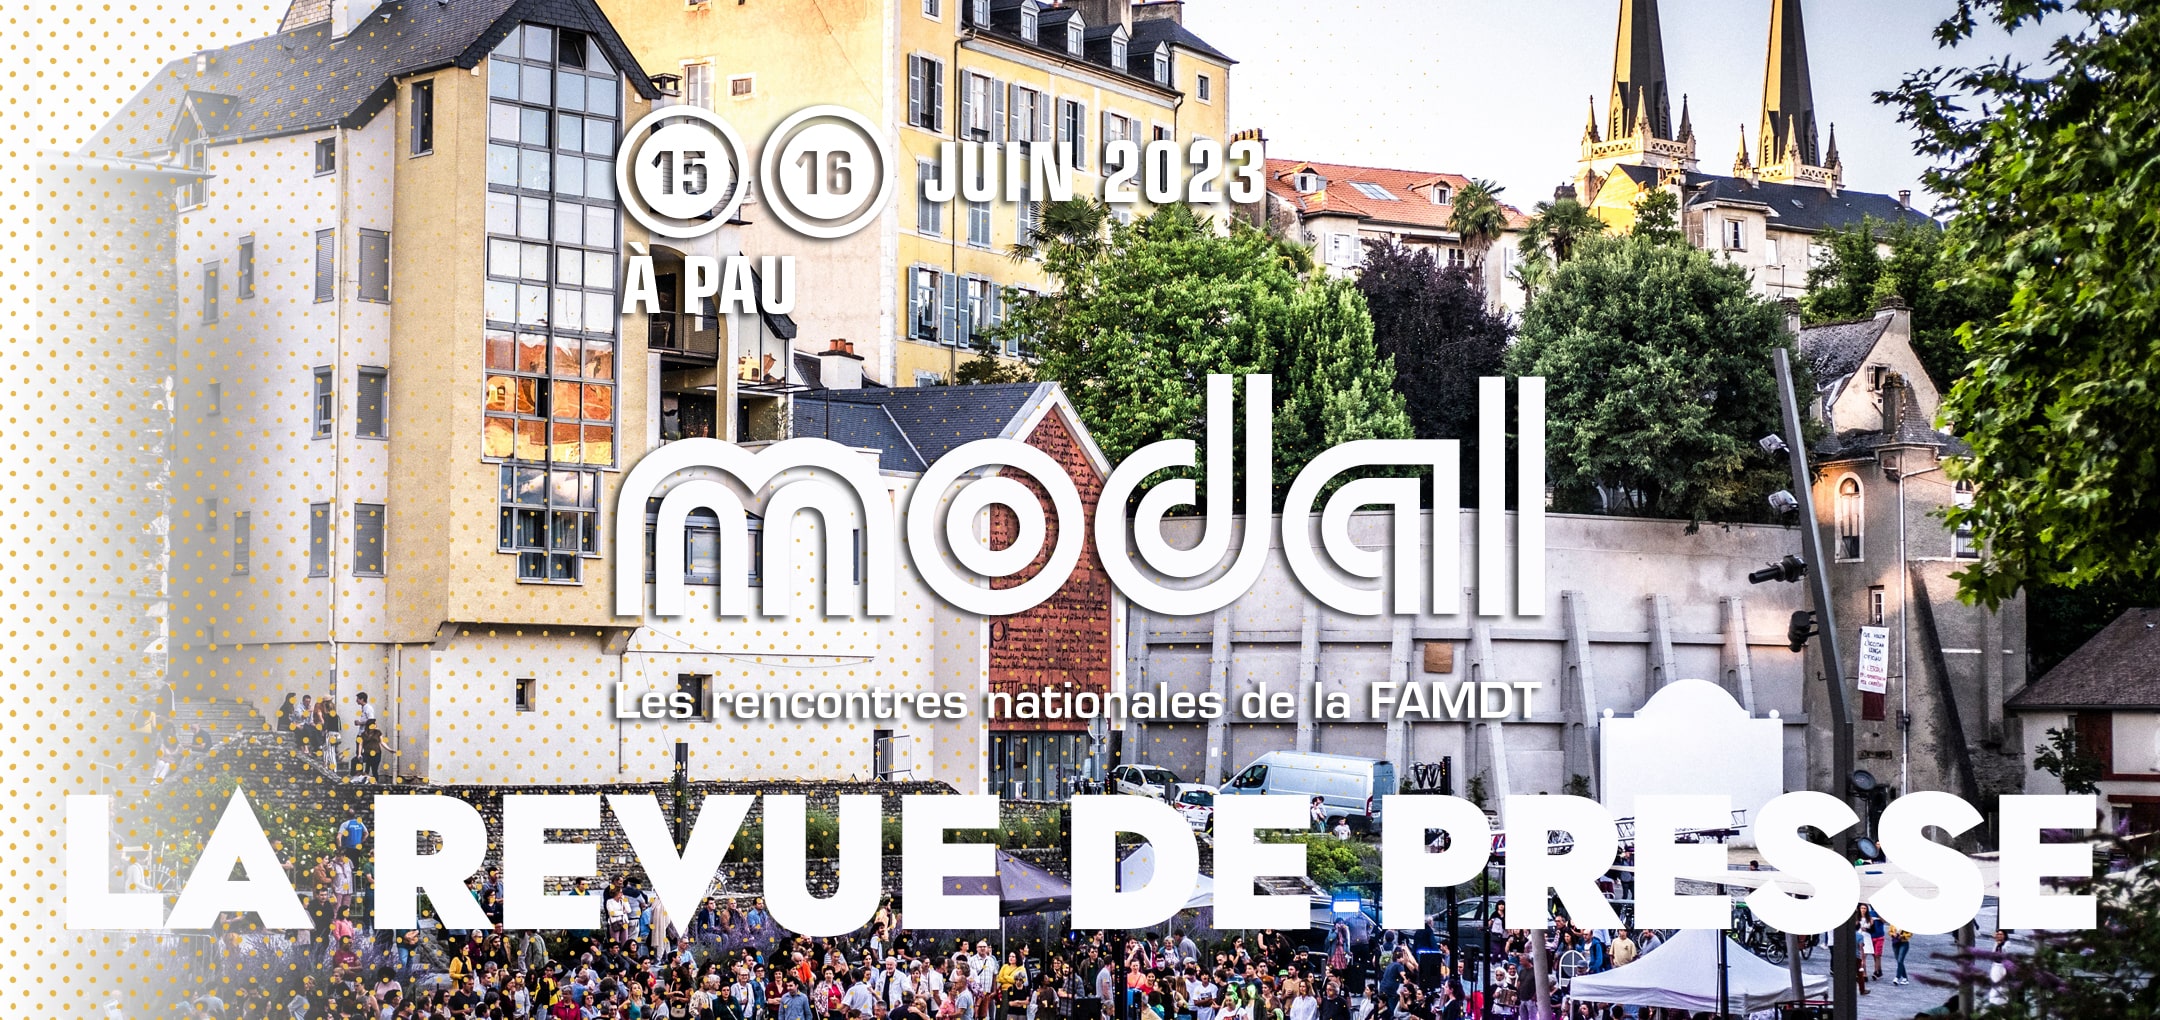 You are currently viewing Modal, à PAU – La presse en parle